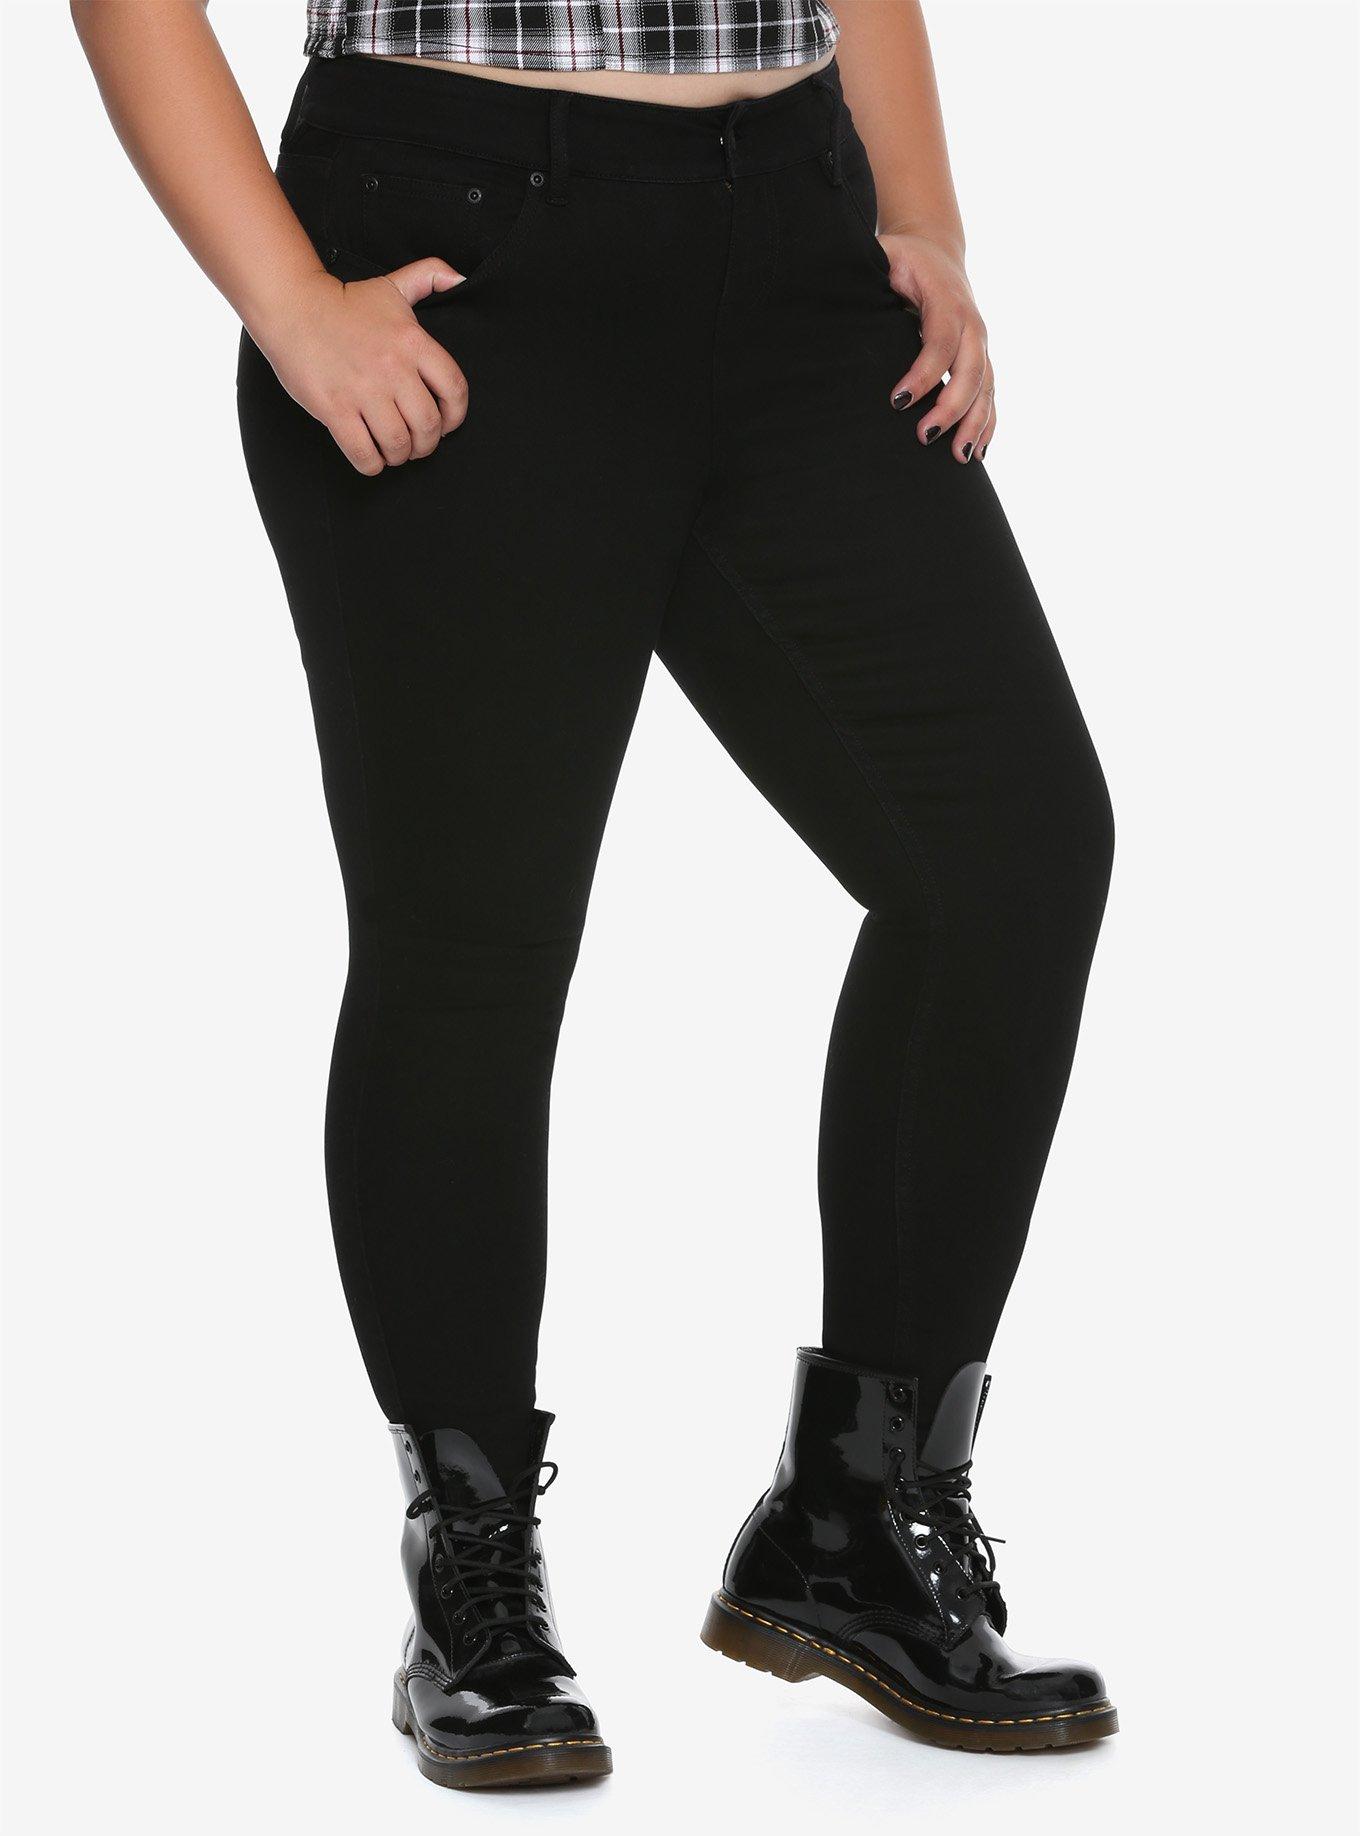 NEW! Blackheart Black Skinny Jeans Plus Size, BLACK, hi-res